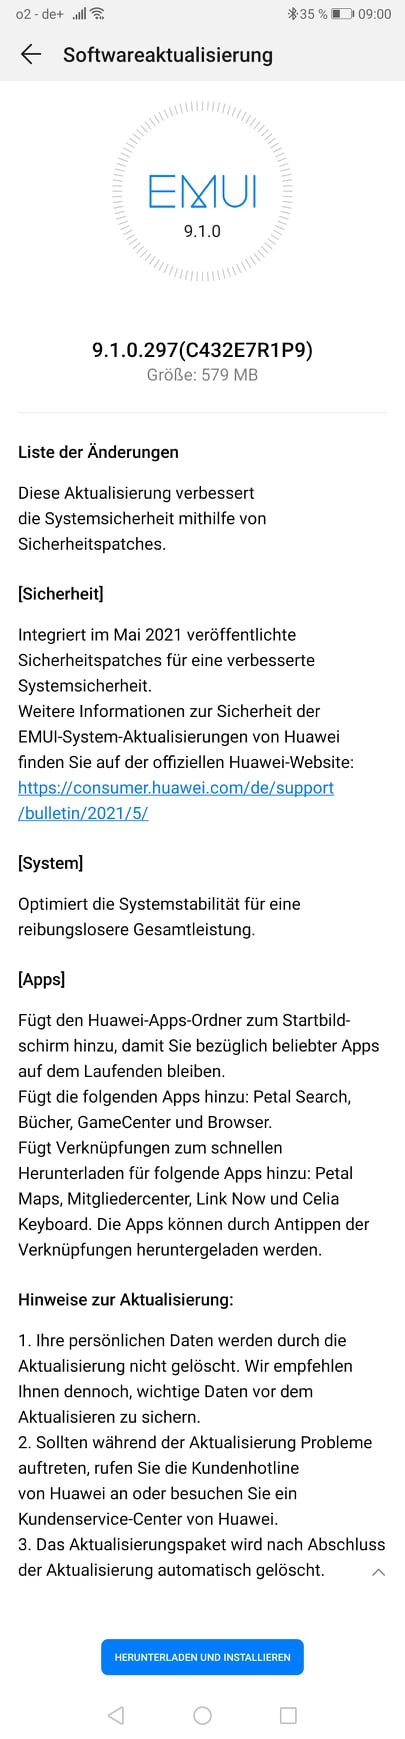 Huawei P10 Plus EMUI 9.1.0.287 Update Changelog